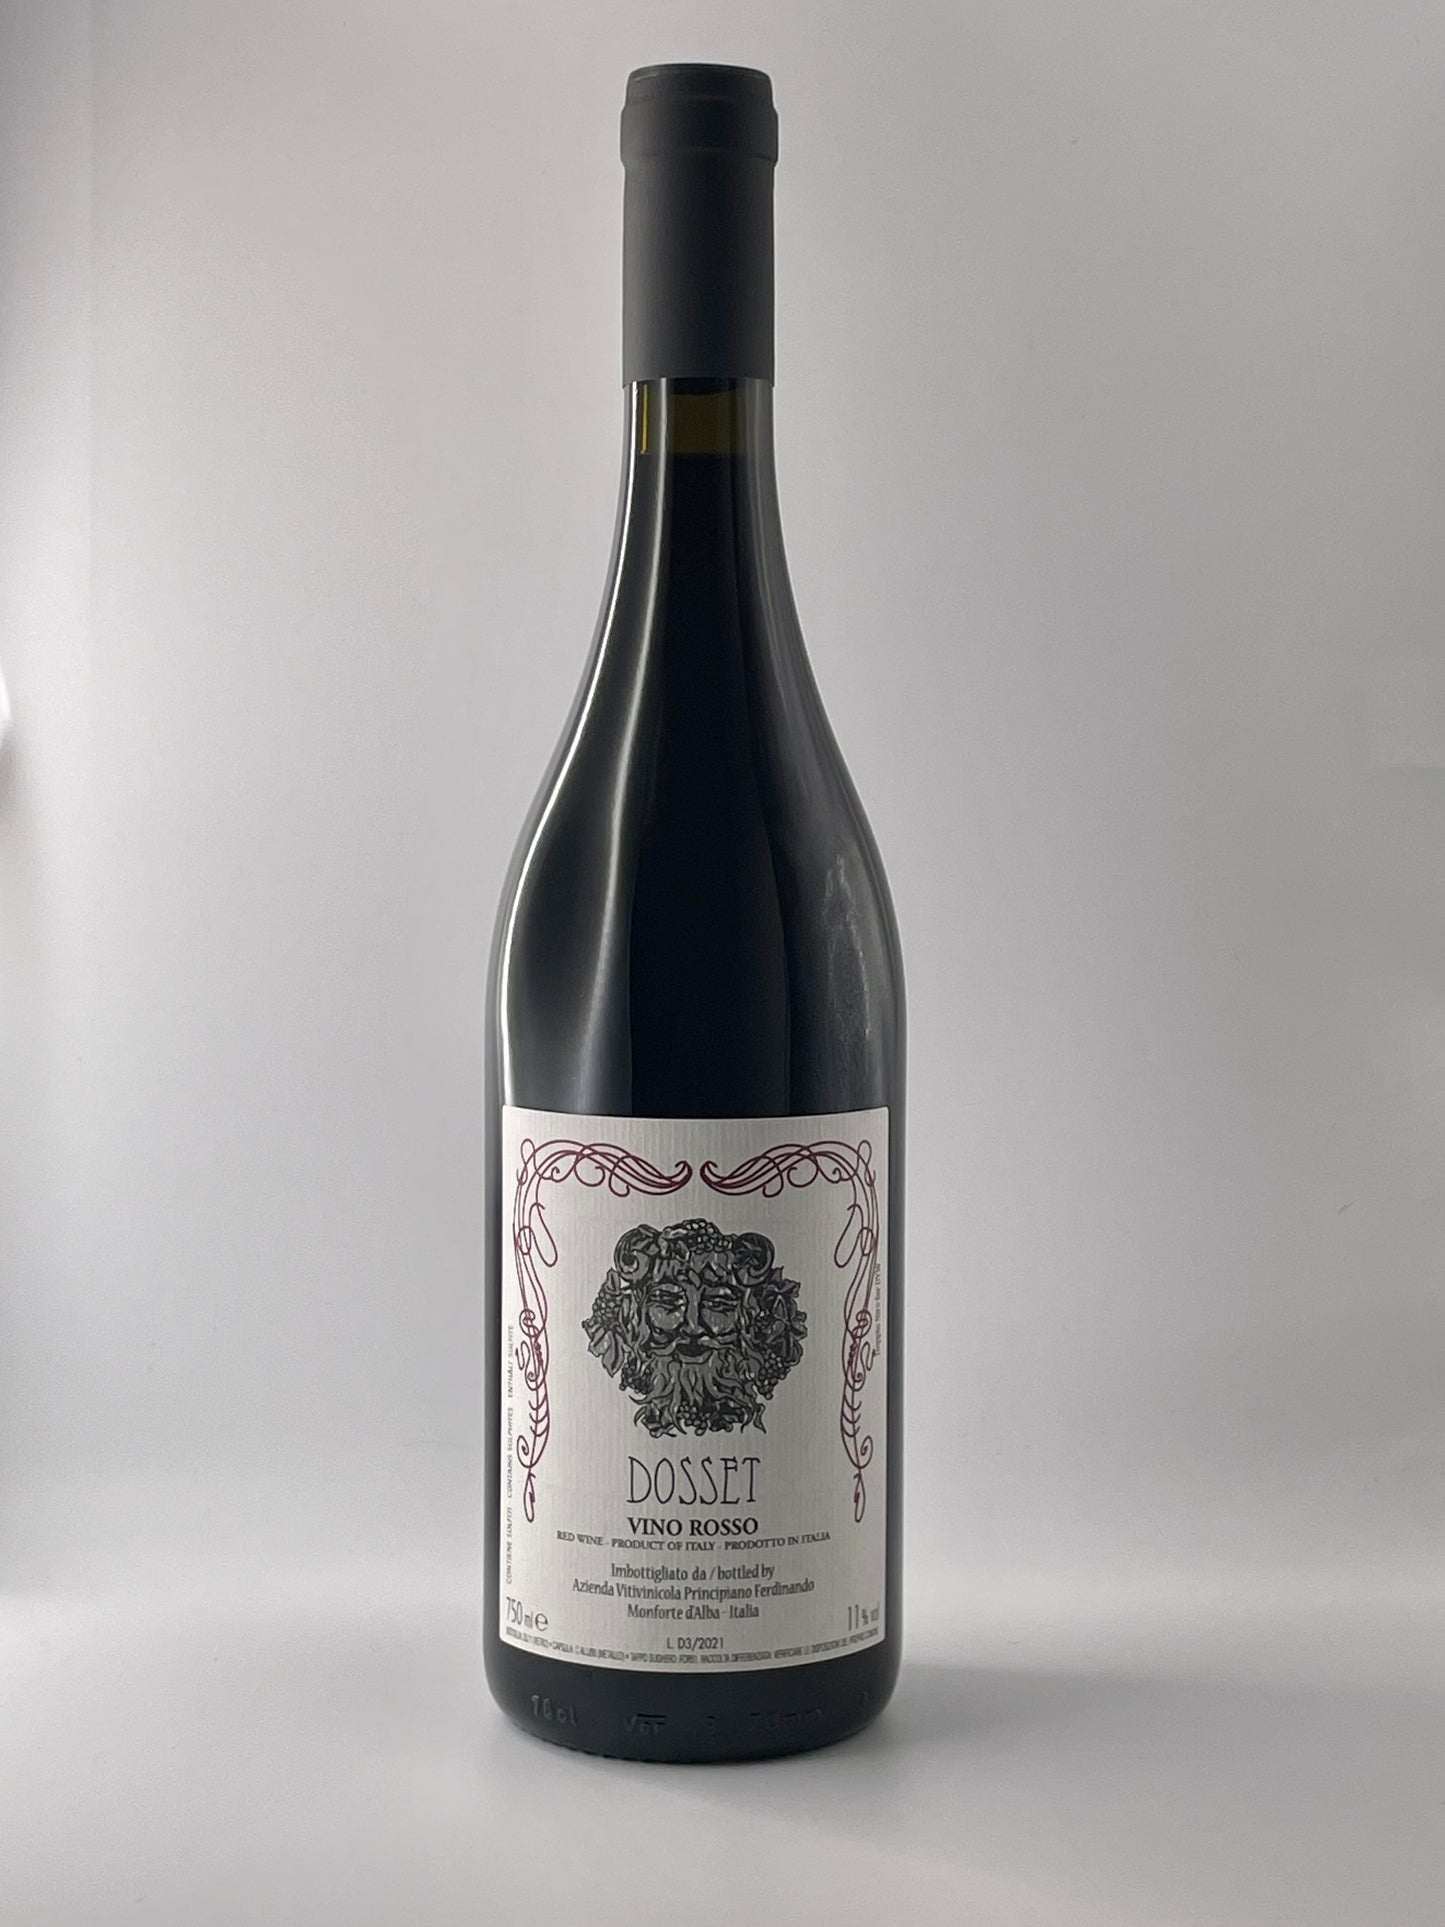 Principiano Ferdinando, Dosset Vino Rosso 2022 (Piemonte)